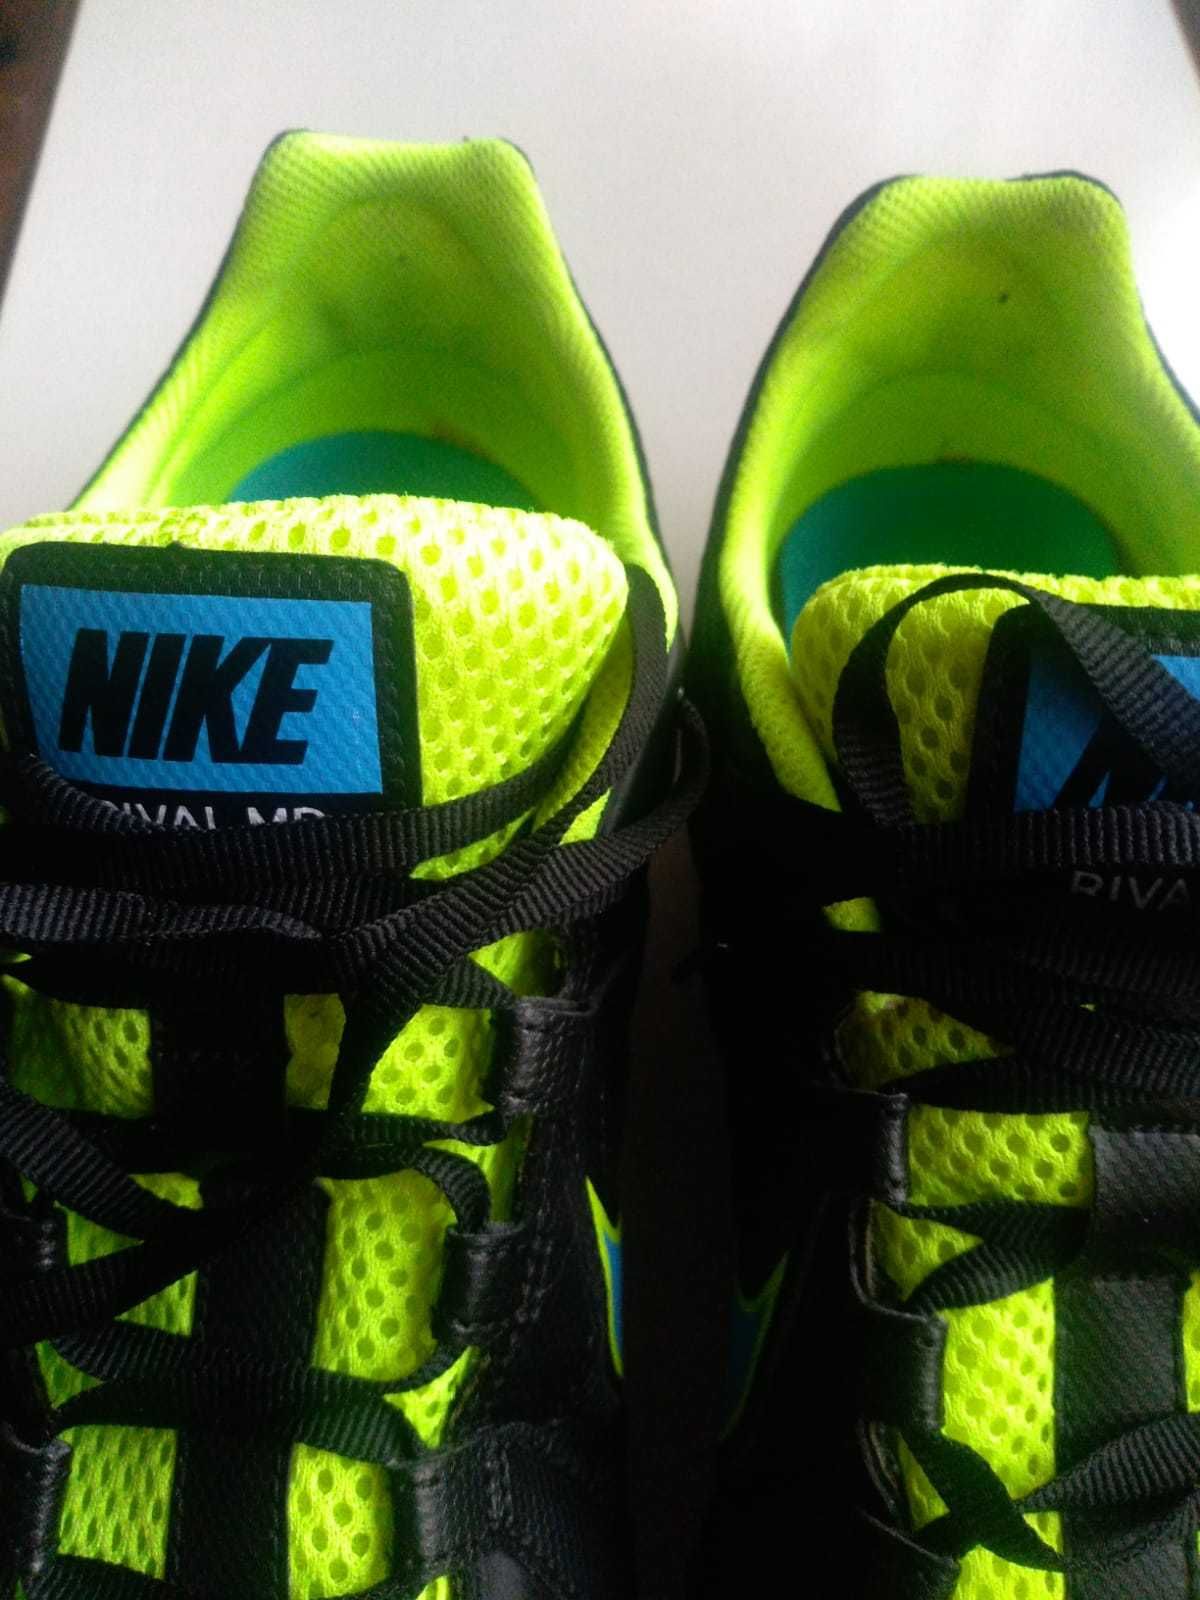 Adidasi atletism / cuie alergare Nike originali 46